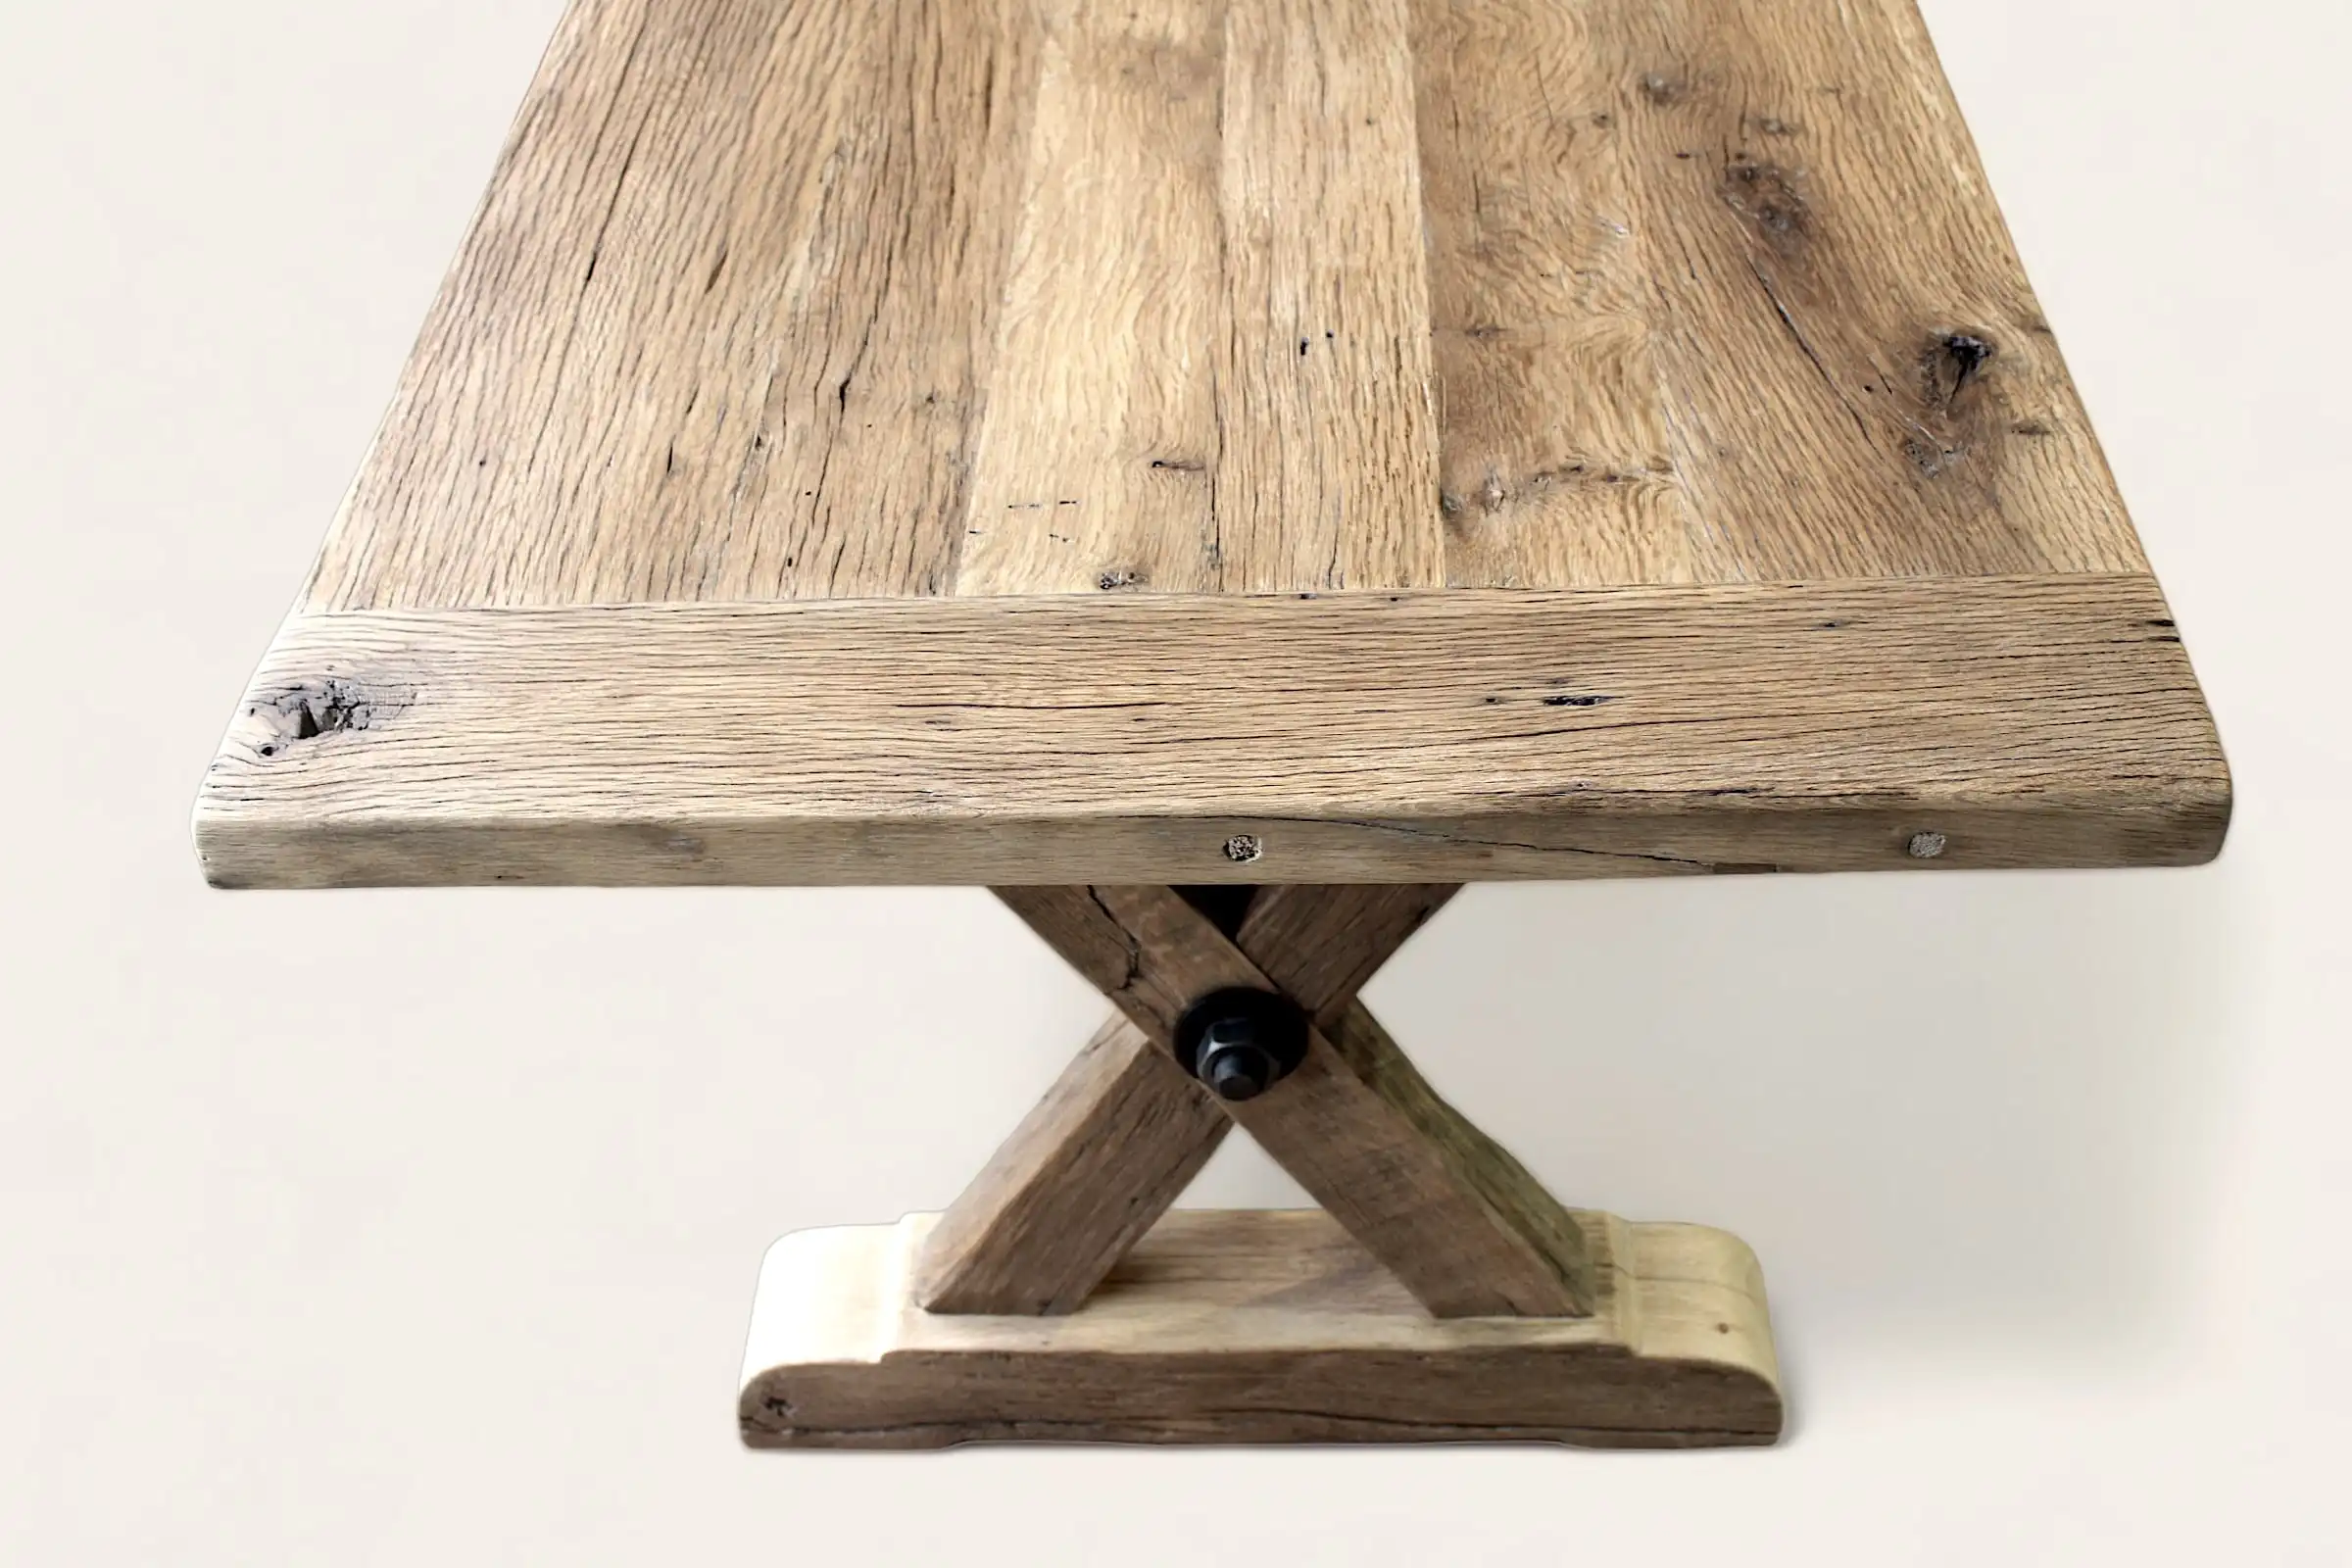  Détail du coin d'une table rustique en bois ancien avec des nœuds et des marques naturelles, reposant sur une base en X robuste, mettant en avant la fusion du charme rustique et de la solidité. 